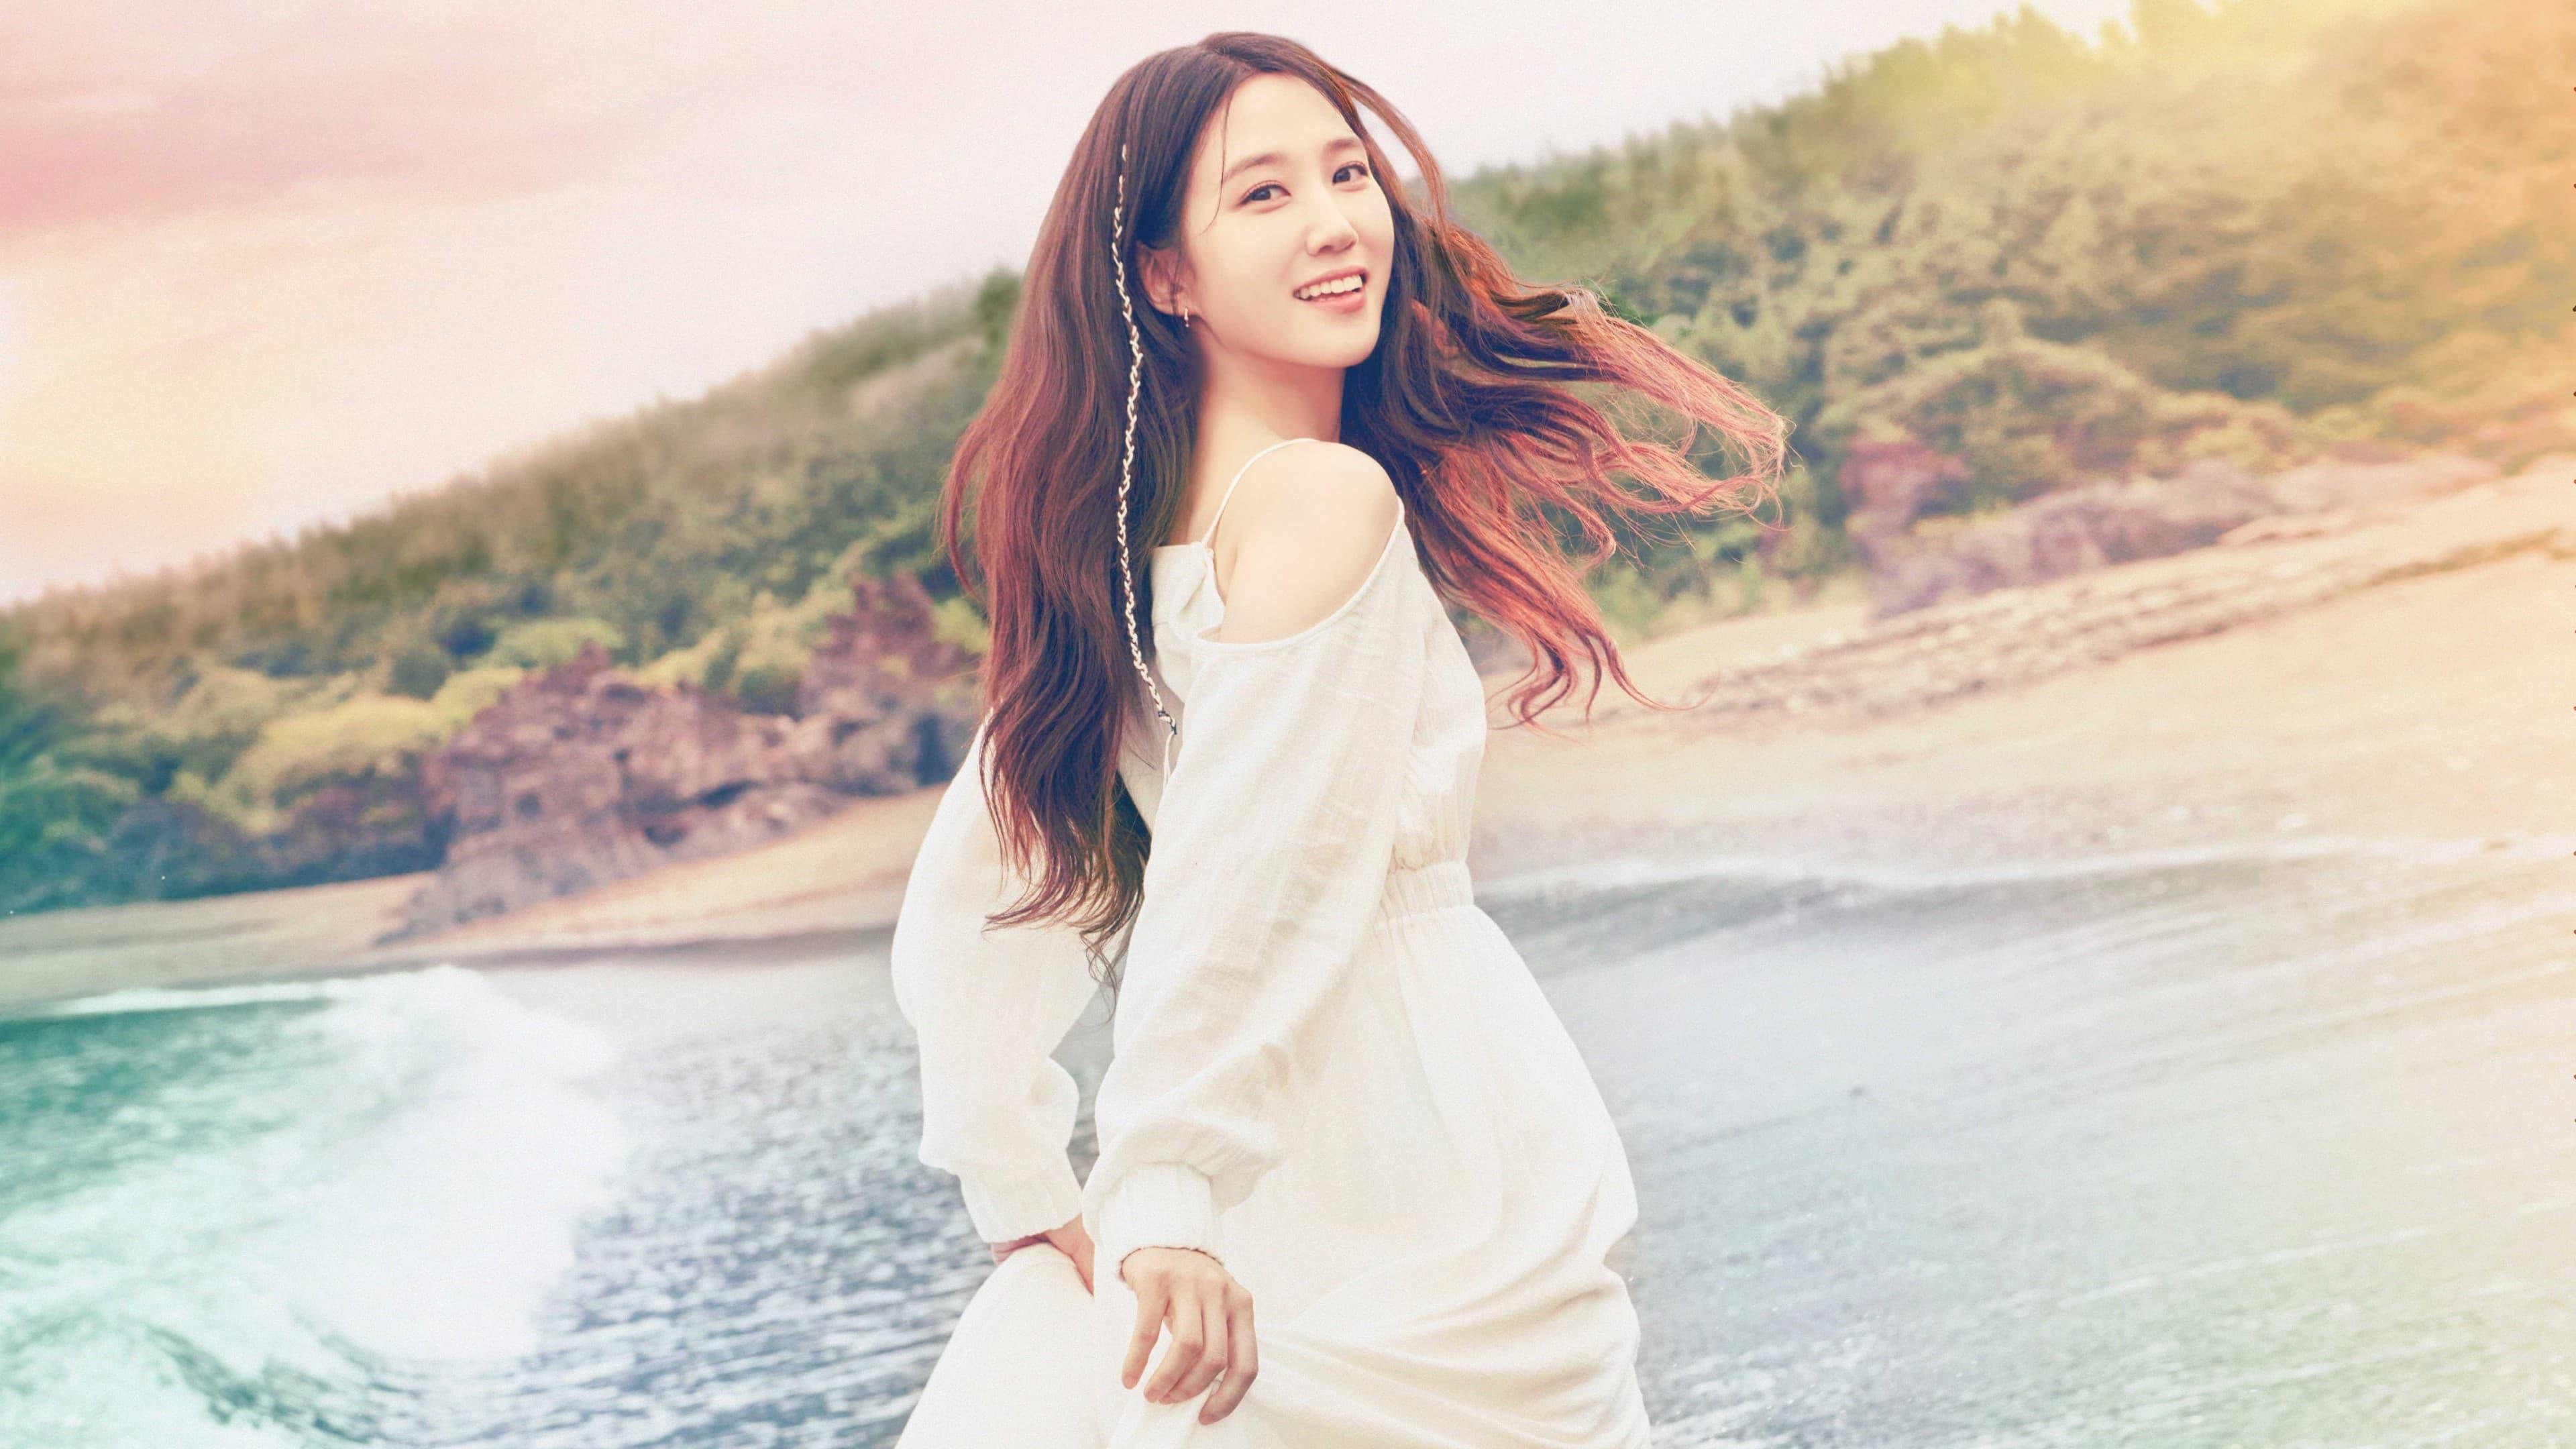 Choi Yi-sun backdrop